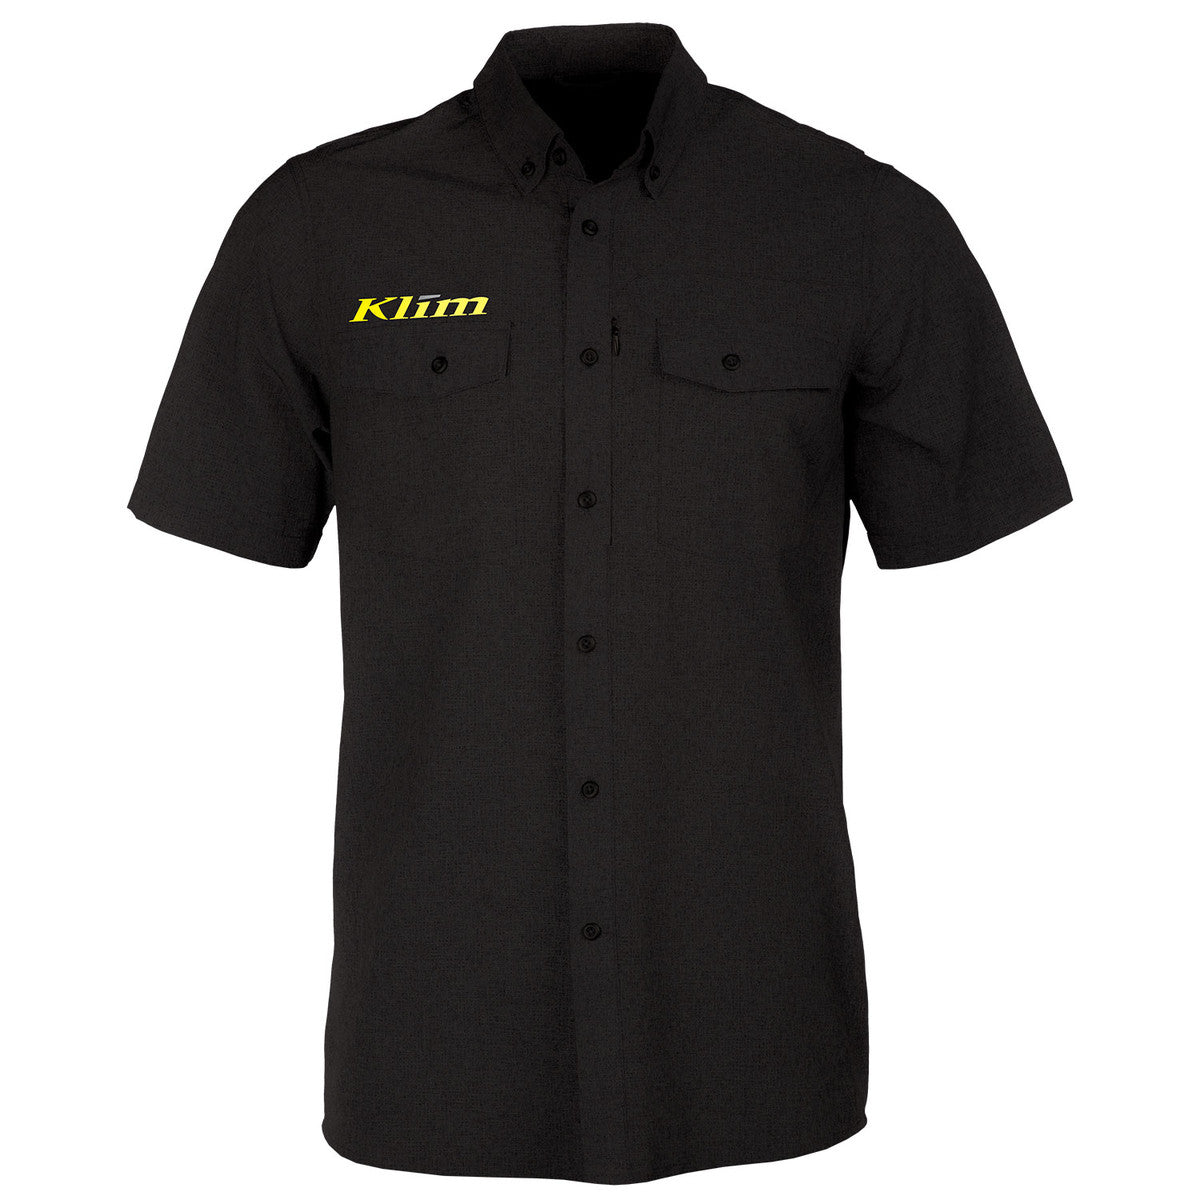 Klim Pit Black Shirt